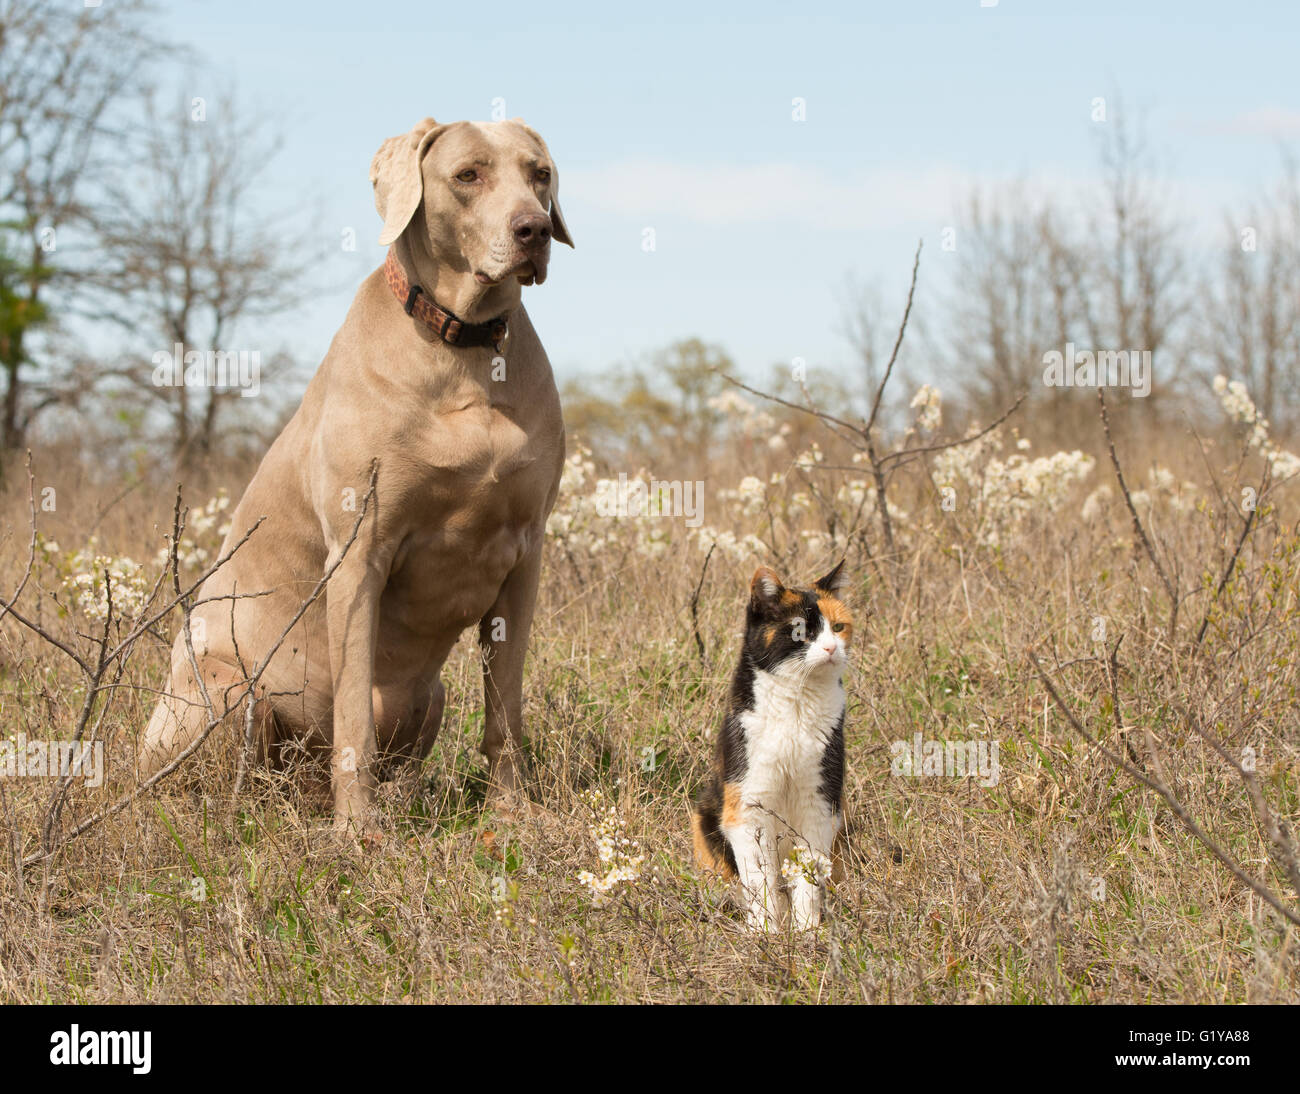 Chat Calico avec son ami chien braque assis dans l'herbe au début du printemps, à la recherche dans le même sens Banque D'Images